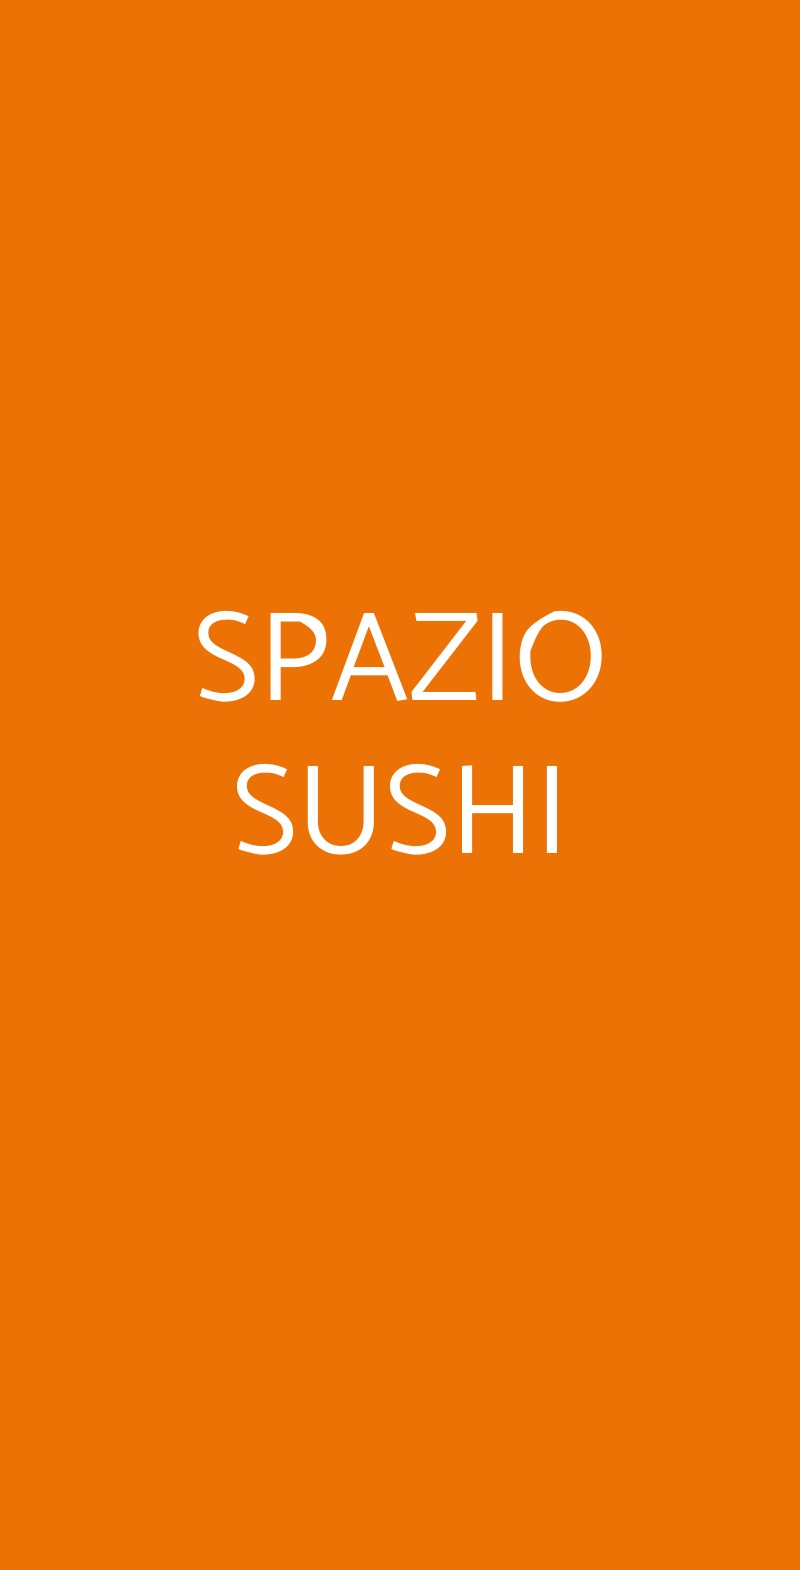 SPAZIO SUSHI Milano menù 1 pagina